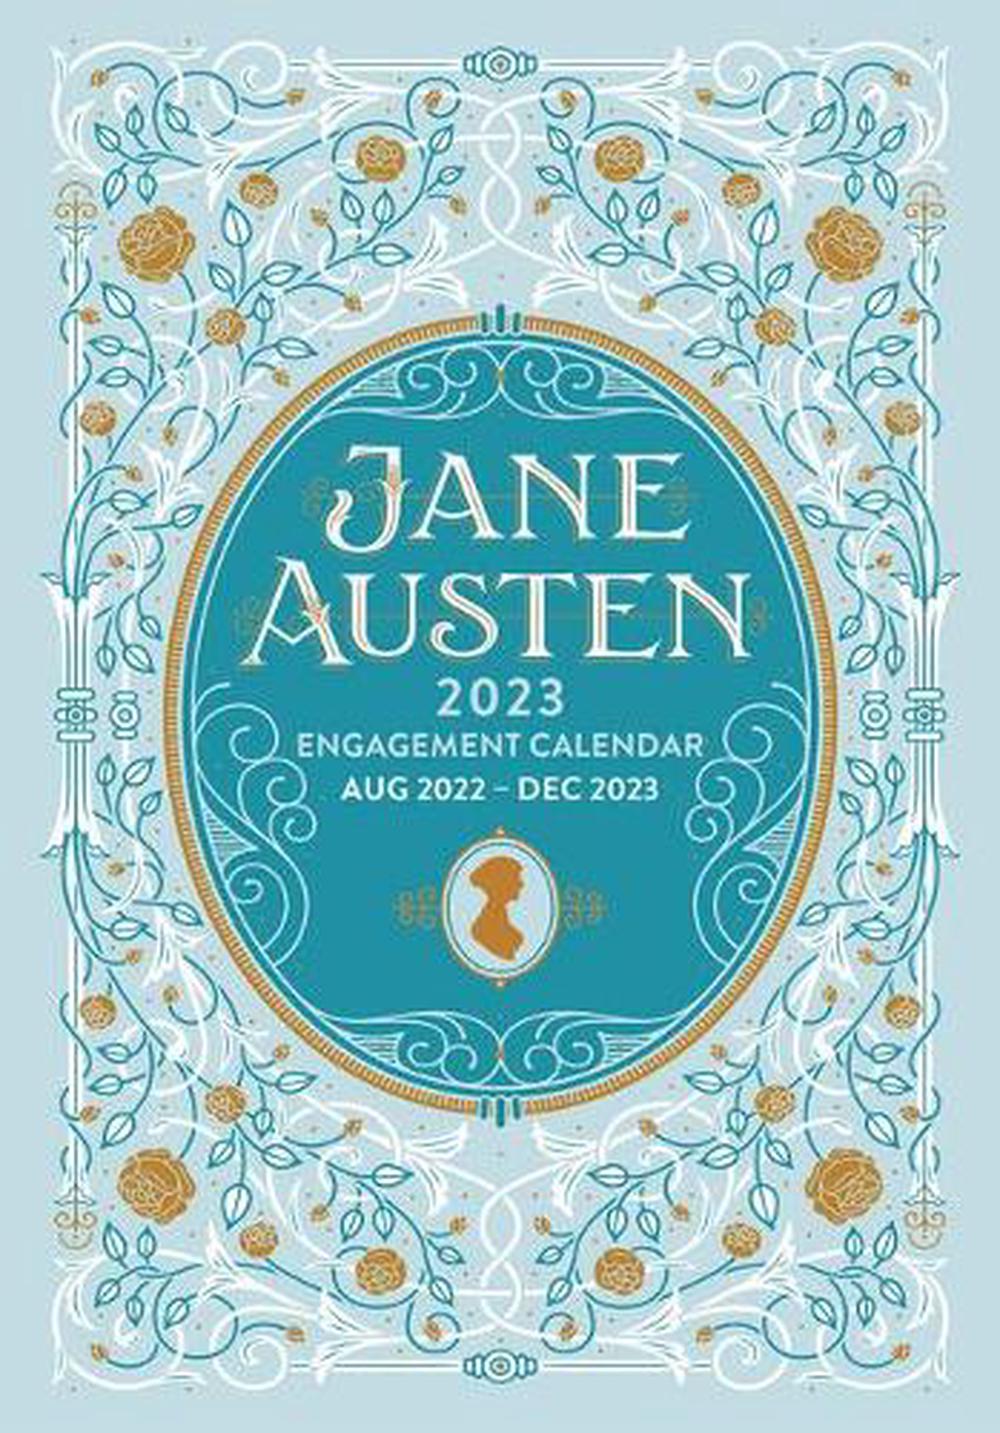 Union Square & Co., Jane Austen Jane Austen 2023 Engagement Calendar